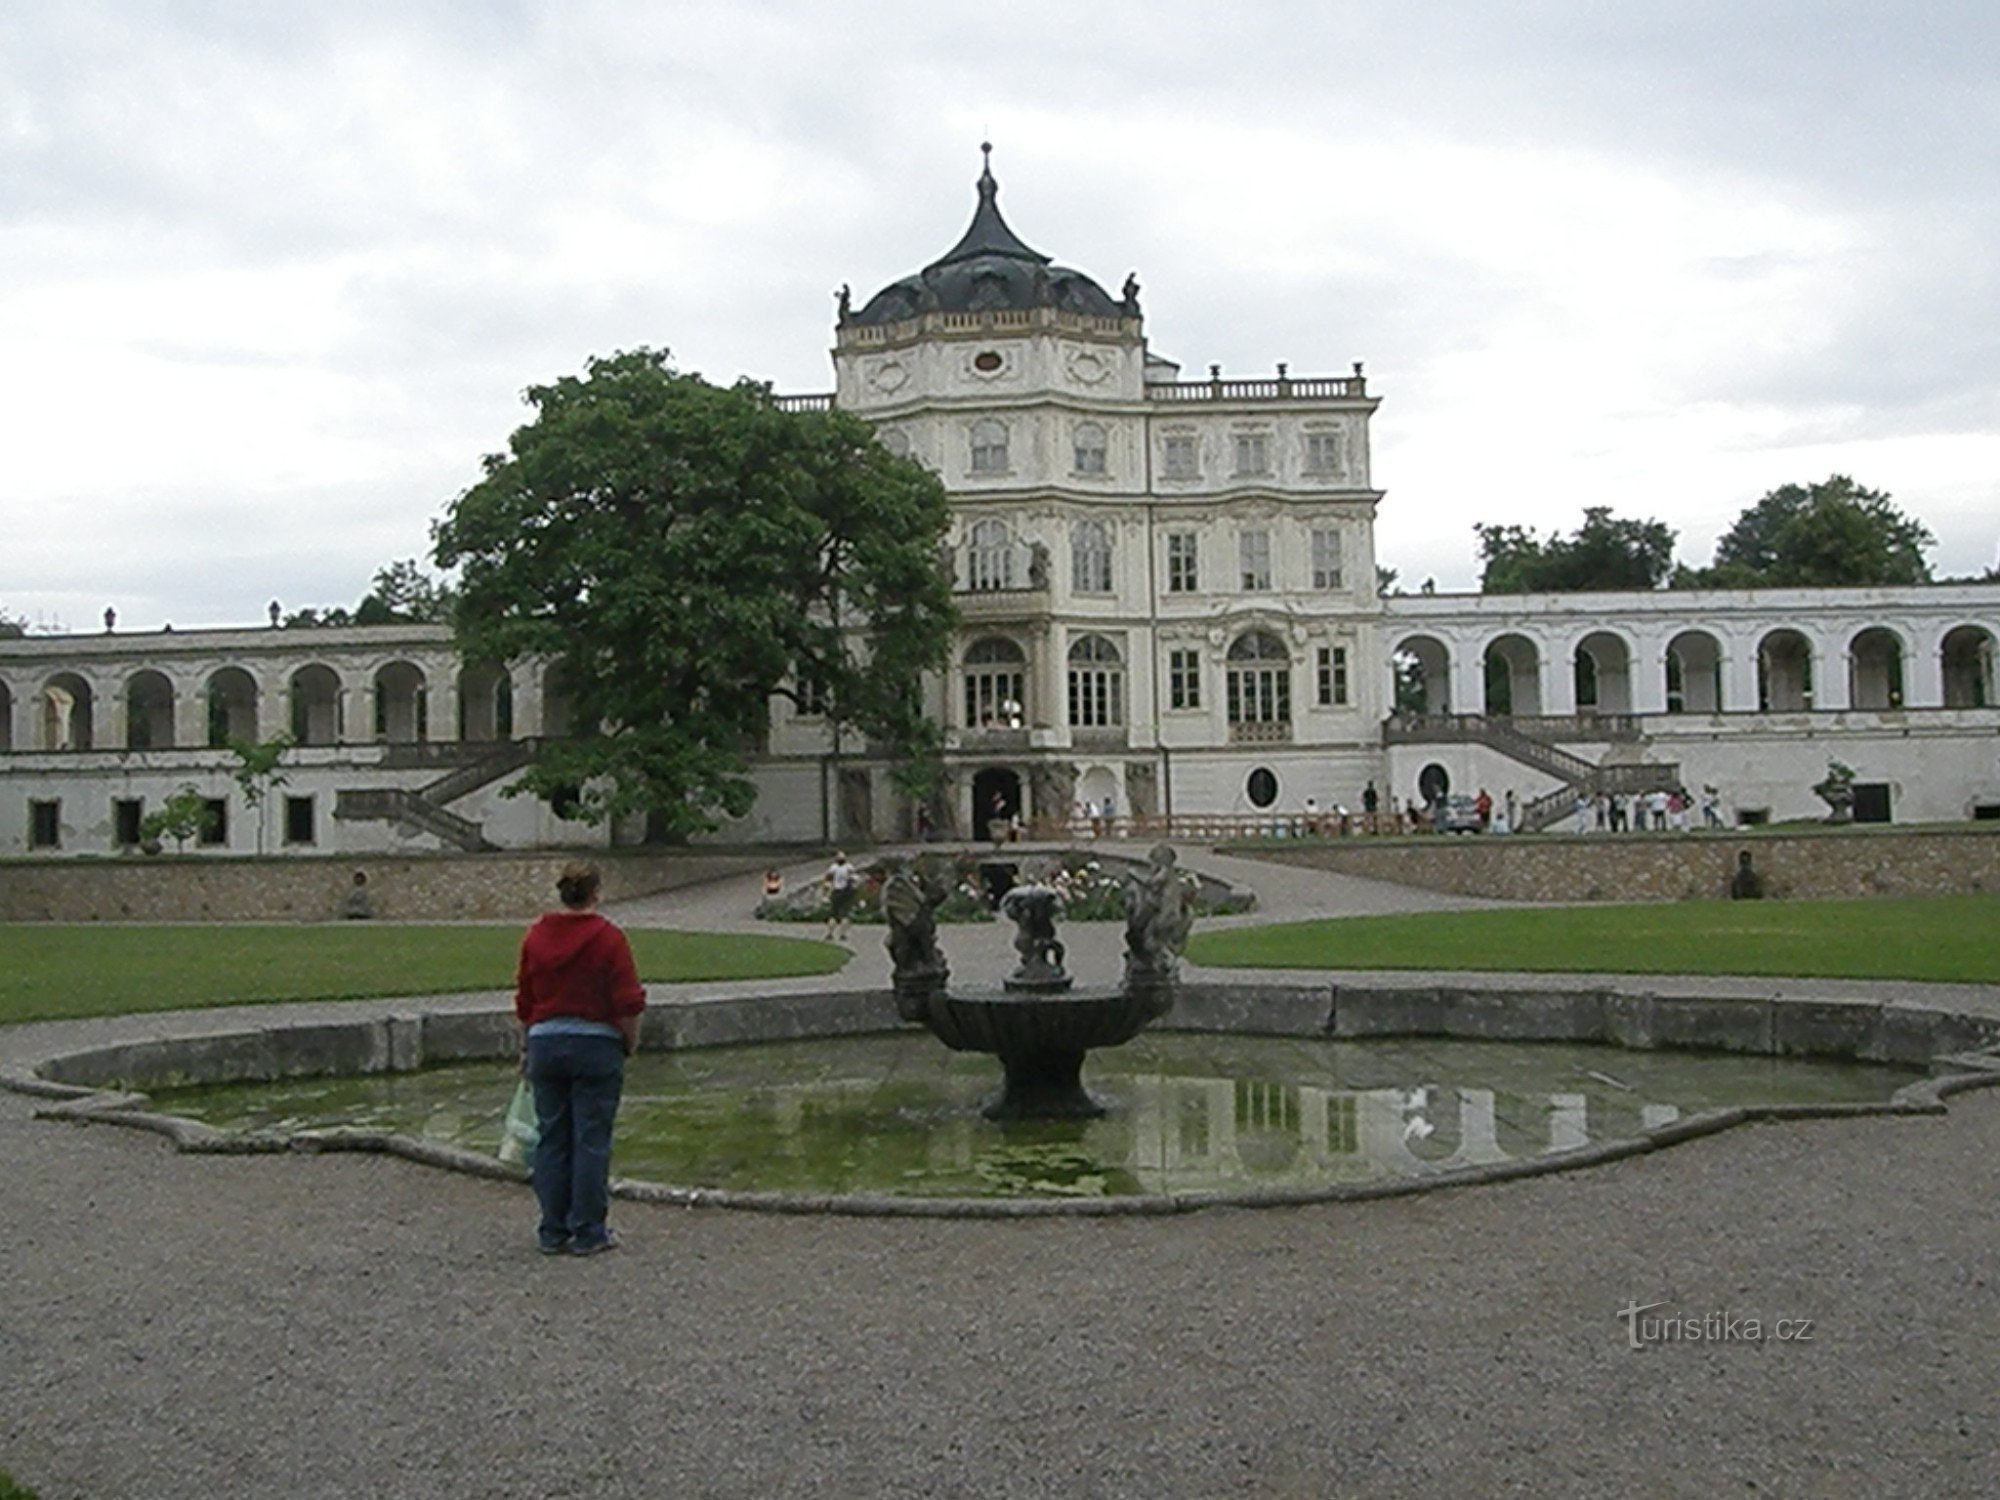 Das hiesige Barockschloss mit seinen Wasserbecken und Teich erinnert vielleicht ein wenig an ein kleines Versailles